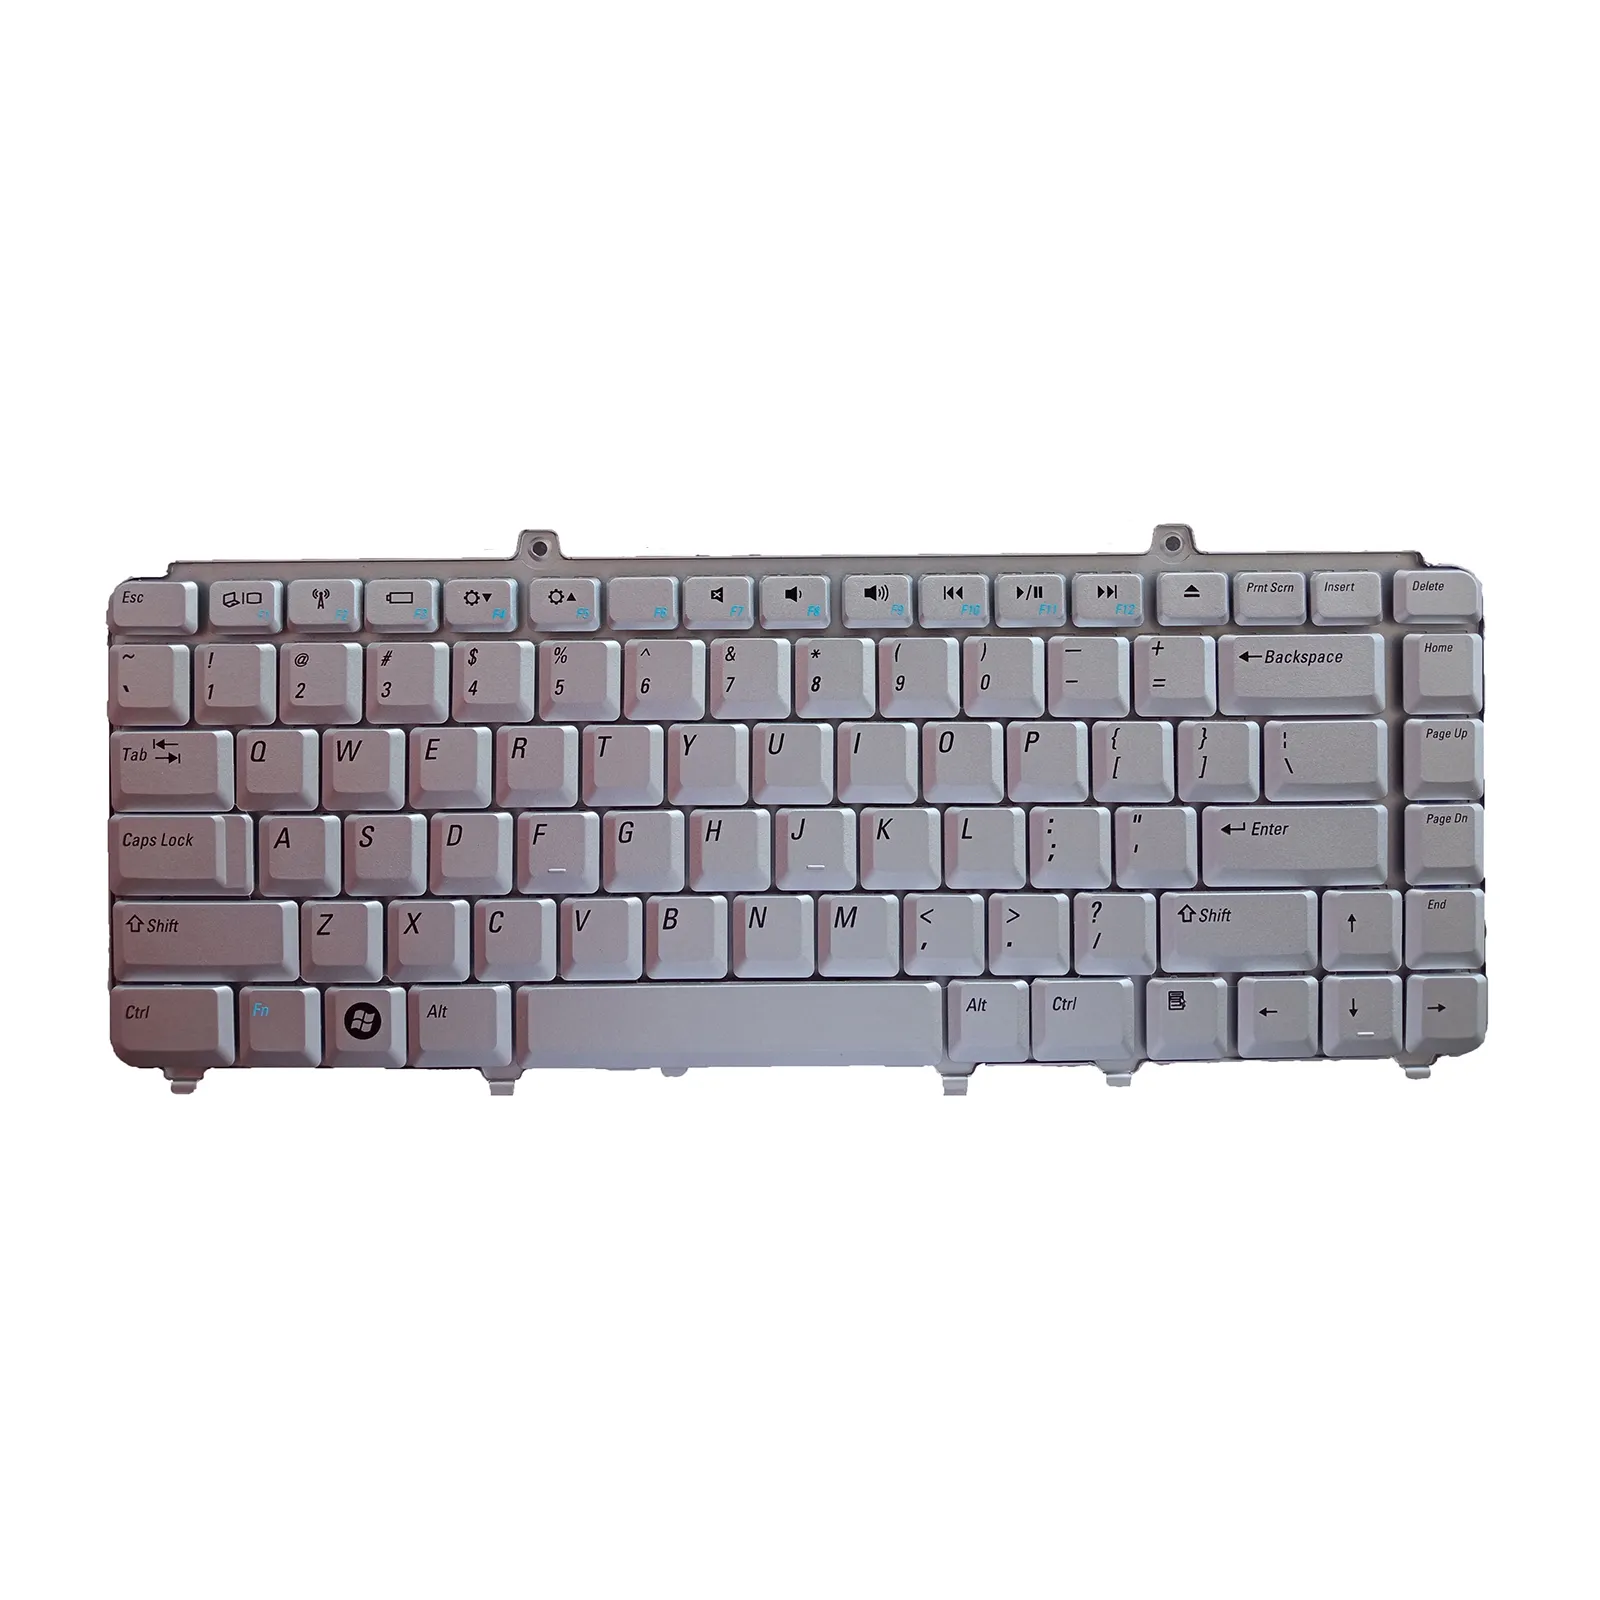 Keyboard Laptop untuk Dell Inspiron 1420 1520 1521 1525 1526 M1330 M1530 keyboard perak AS